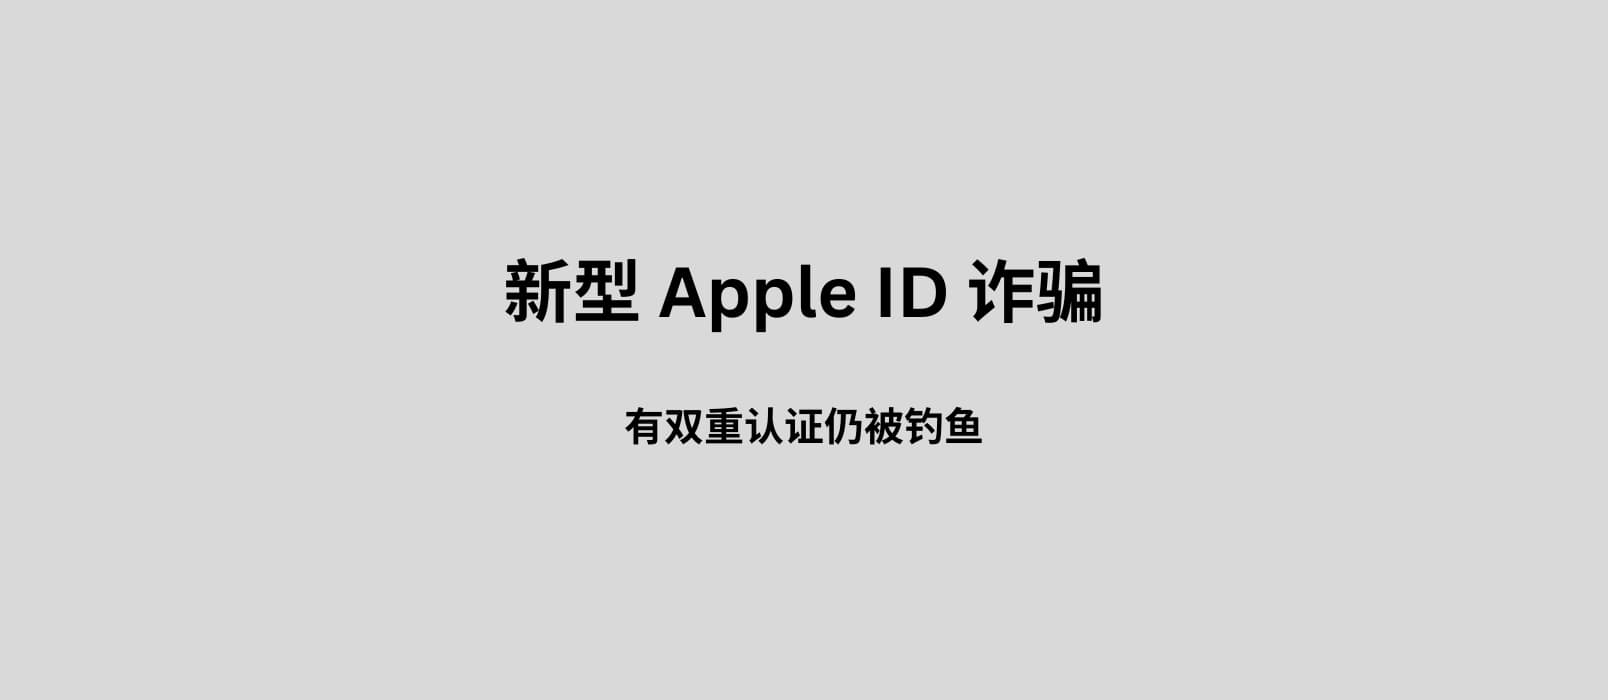 新型 Apple ID 诈骗：有双重认证仍被钓鱼。附一个可能的预防小技巧